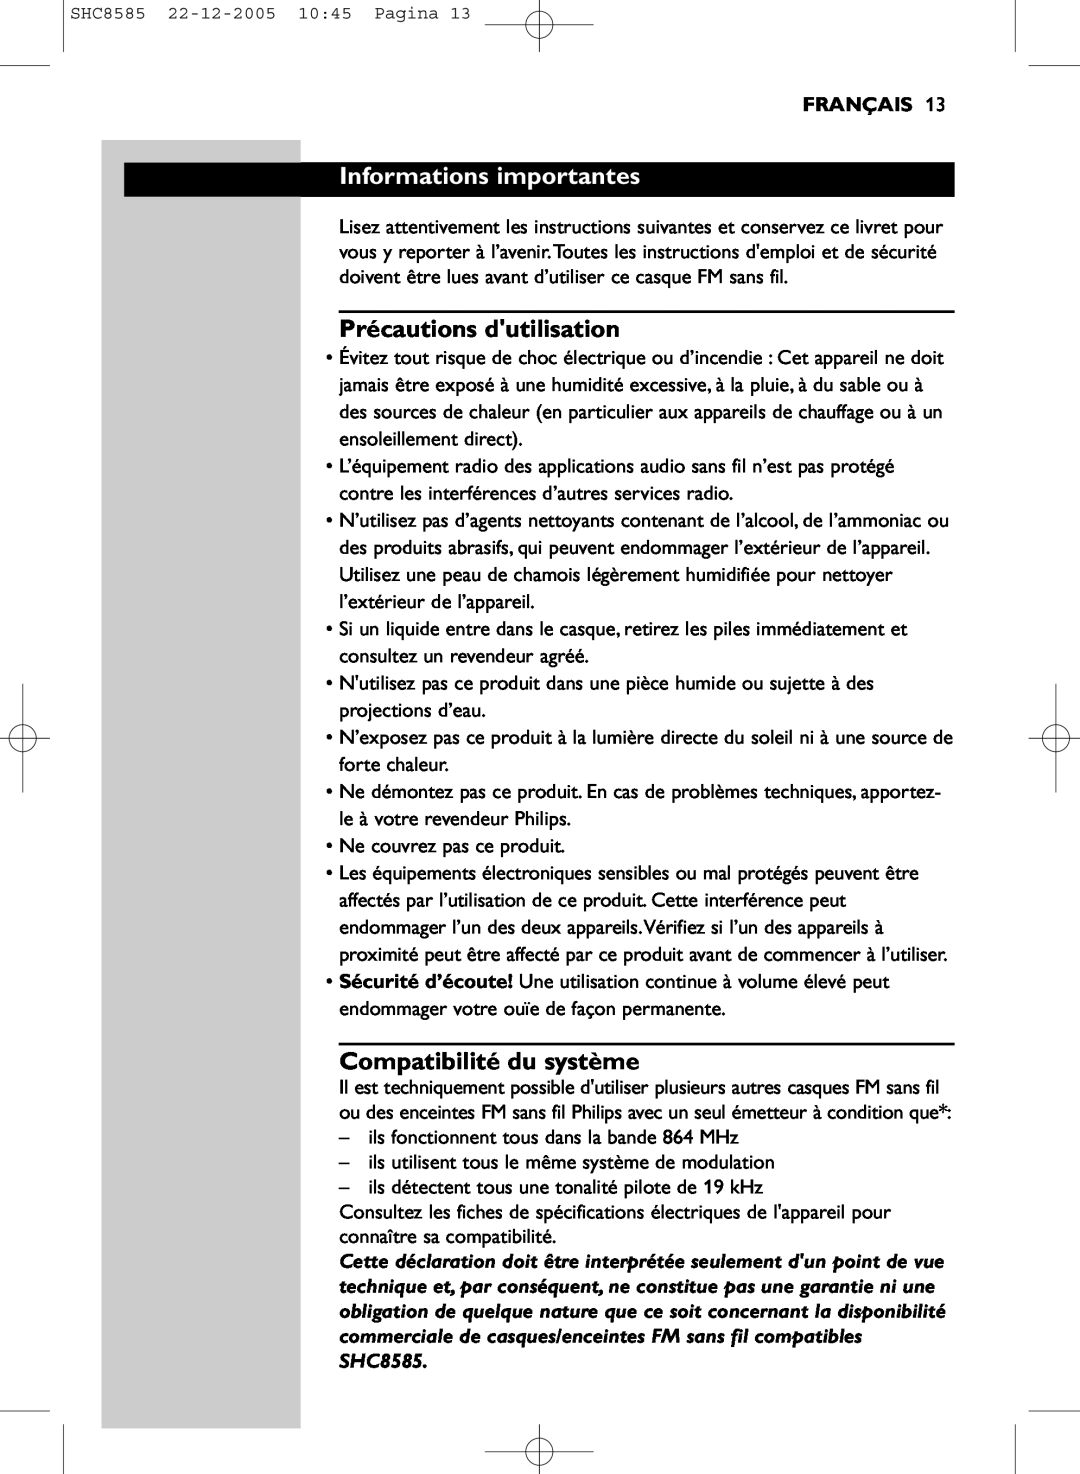 Philips SHC8585/05 manual Informations importantes, Précautions dutilisation, Compatibilité du système, Français 